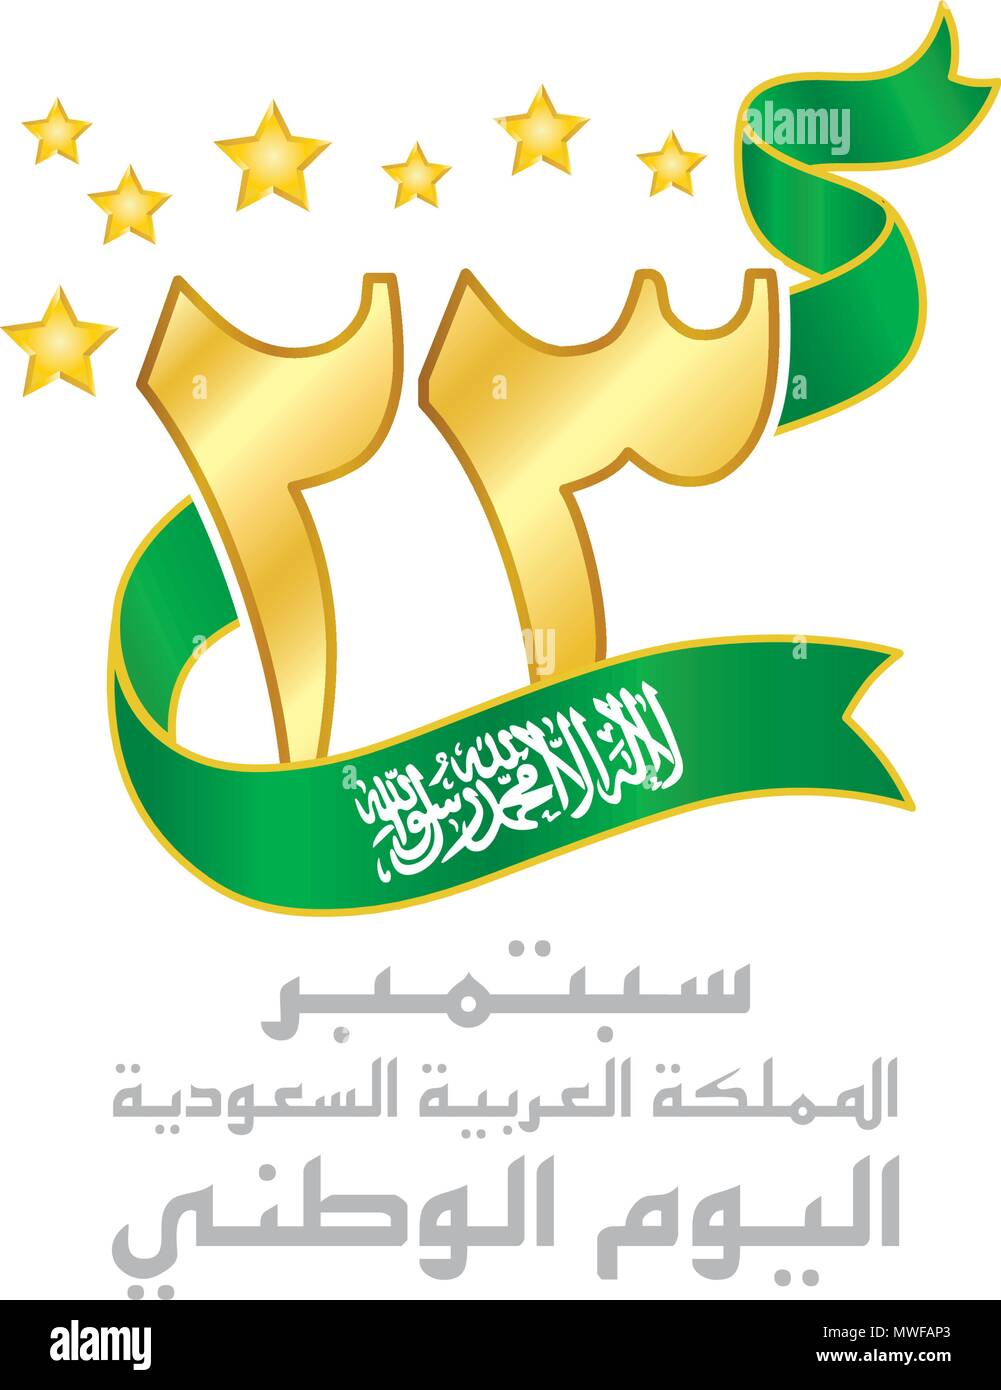 Saudi Arabien National Day Logo, typografische Embleme & Abzeichen, eine Inschrift in Arabisch" 23. September Königreich Saudi-Arabien, National Day', Grün Ri Stock Vektor